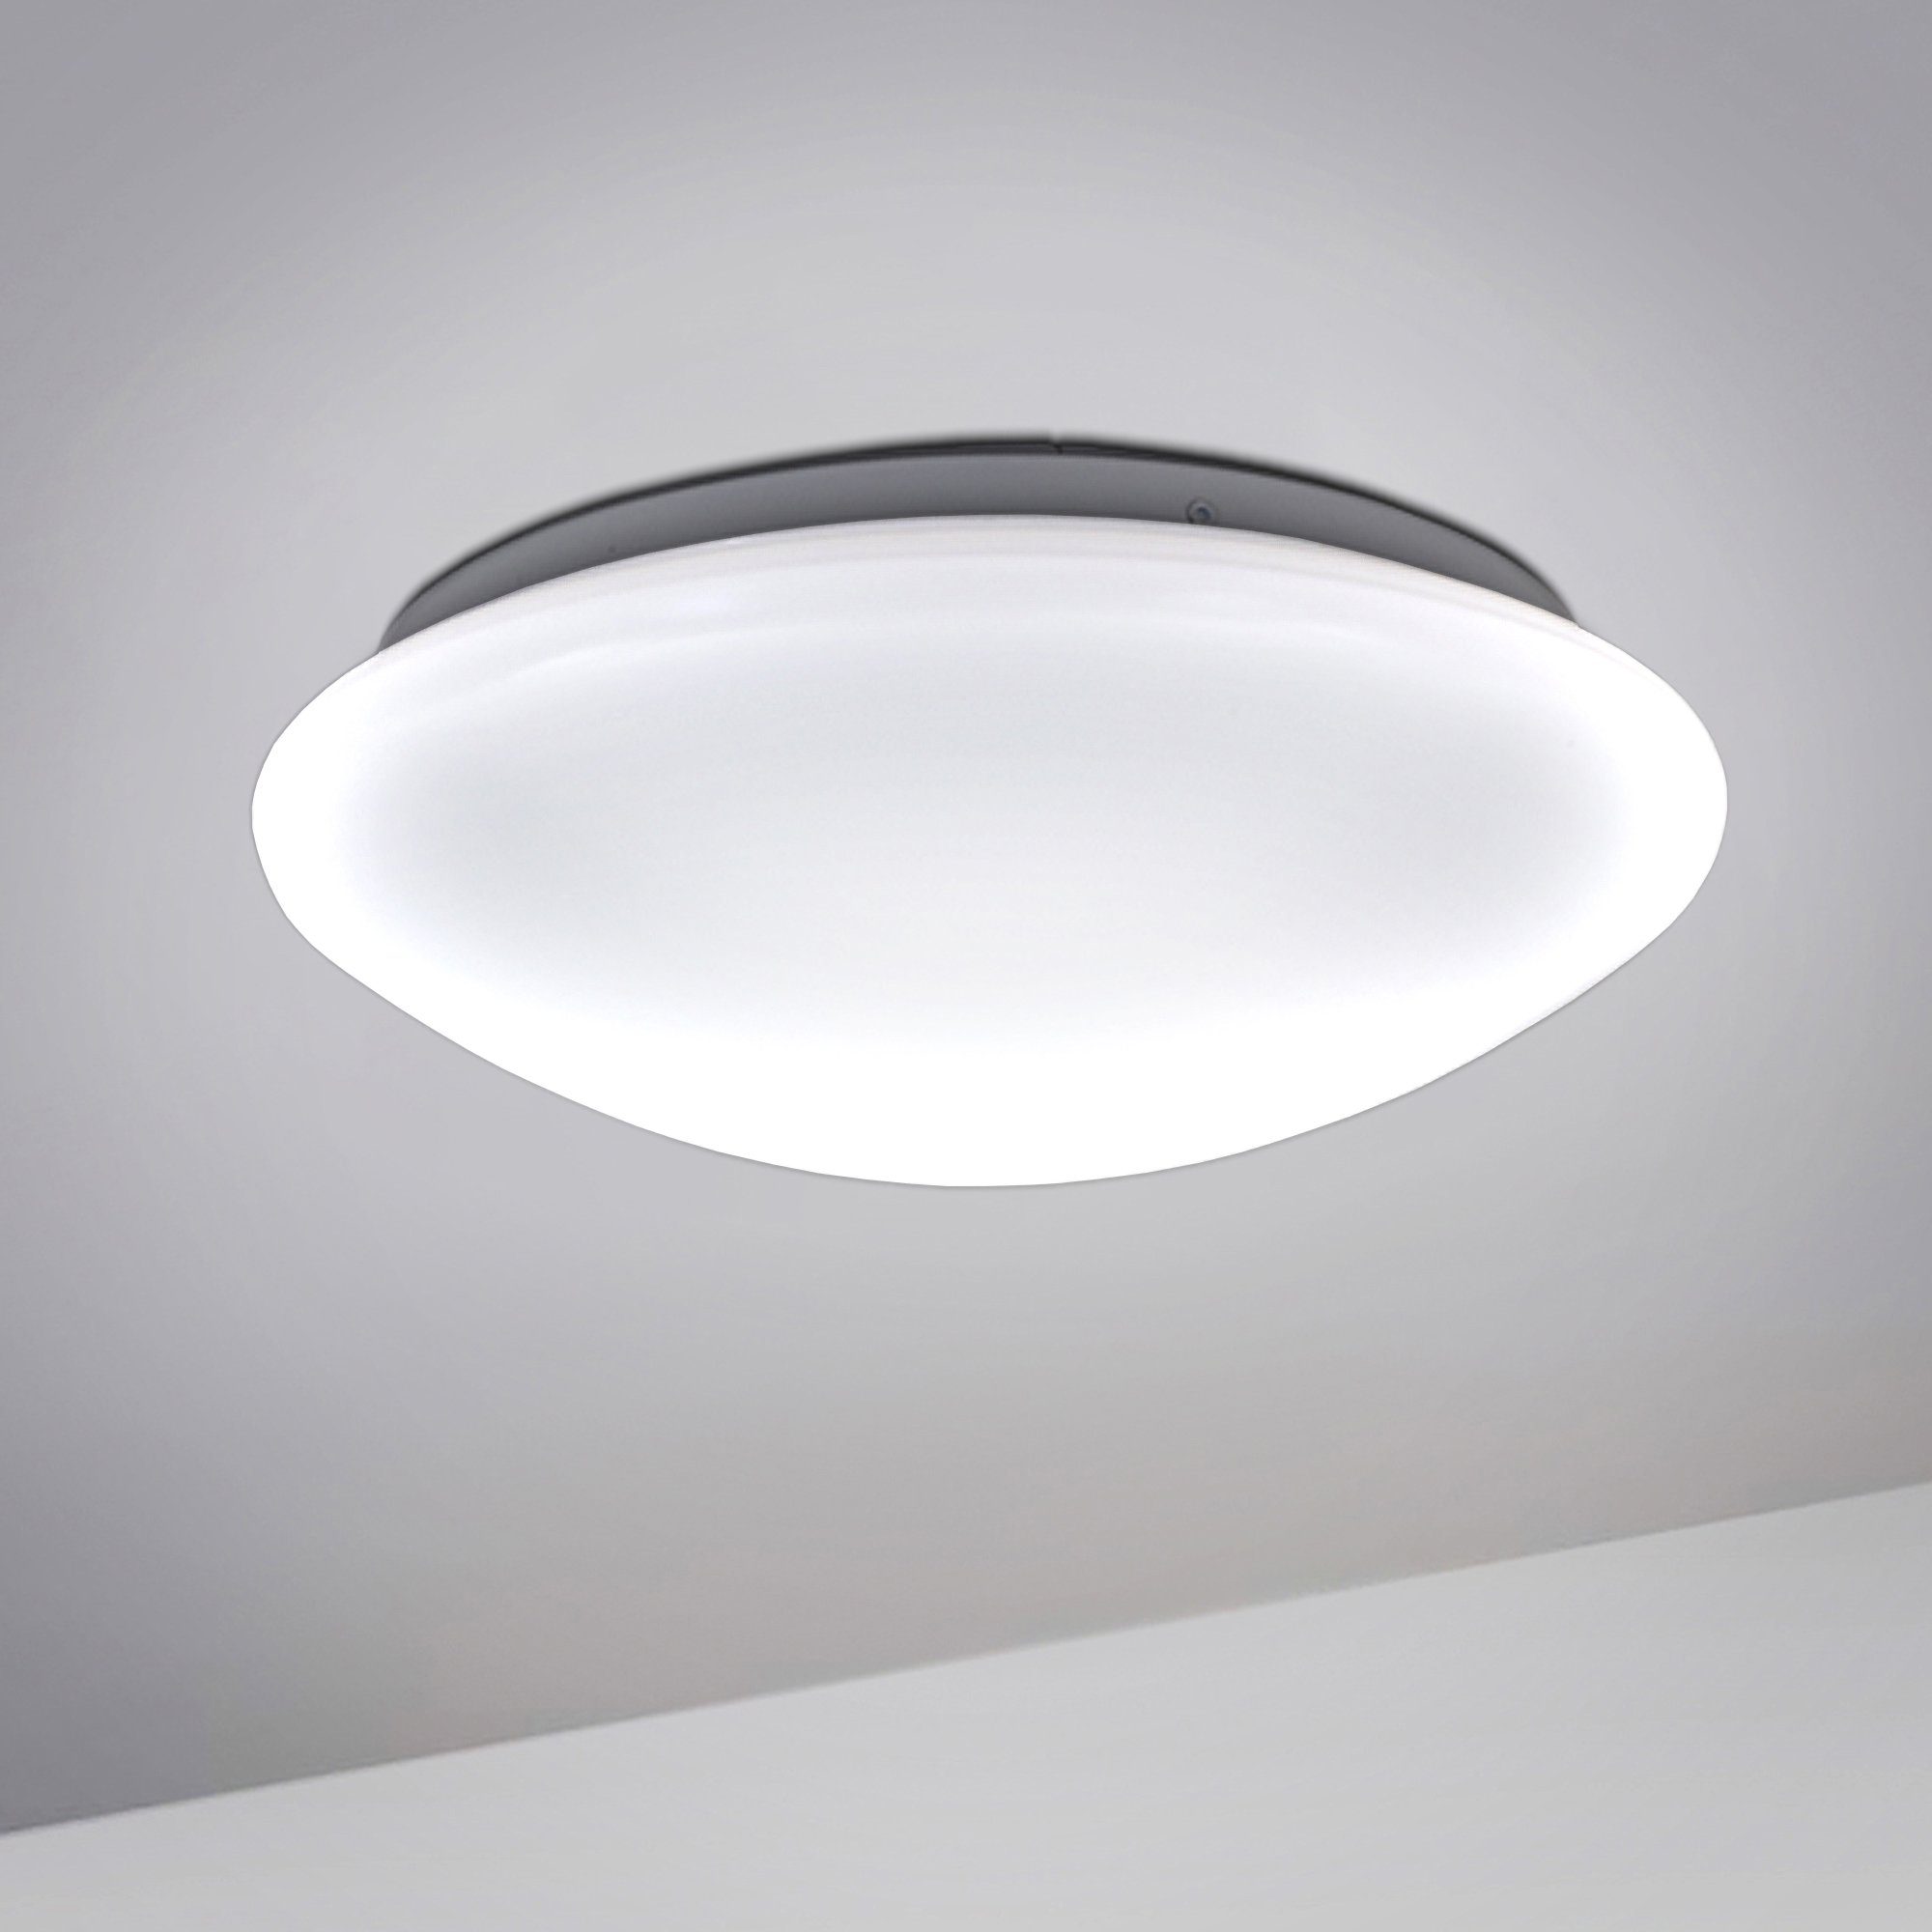 fest B.K.Licht IP44 Bad Deckenleuchte, Design LED Neutralweiß, Küche Deckenlampe Deckenstrahler Badezimmer LED integriert, Flur LED